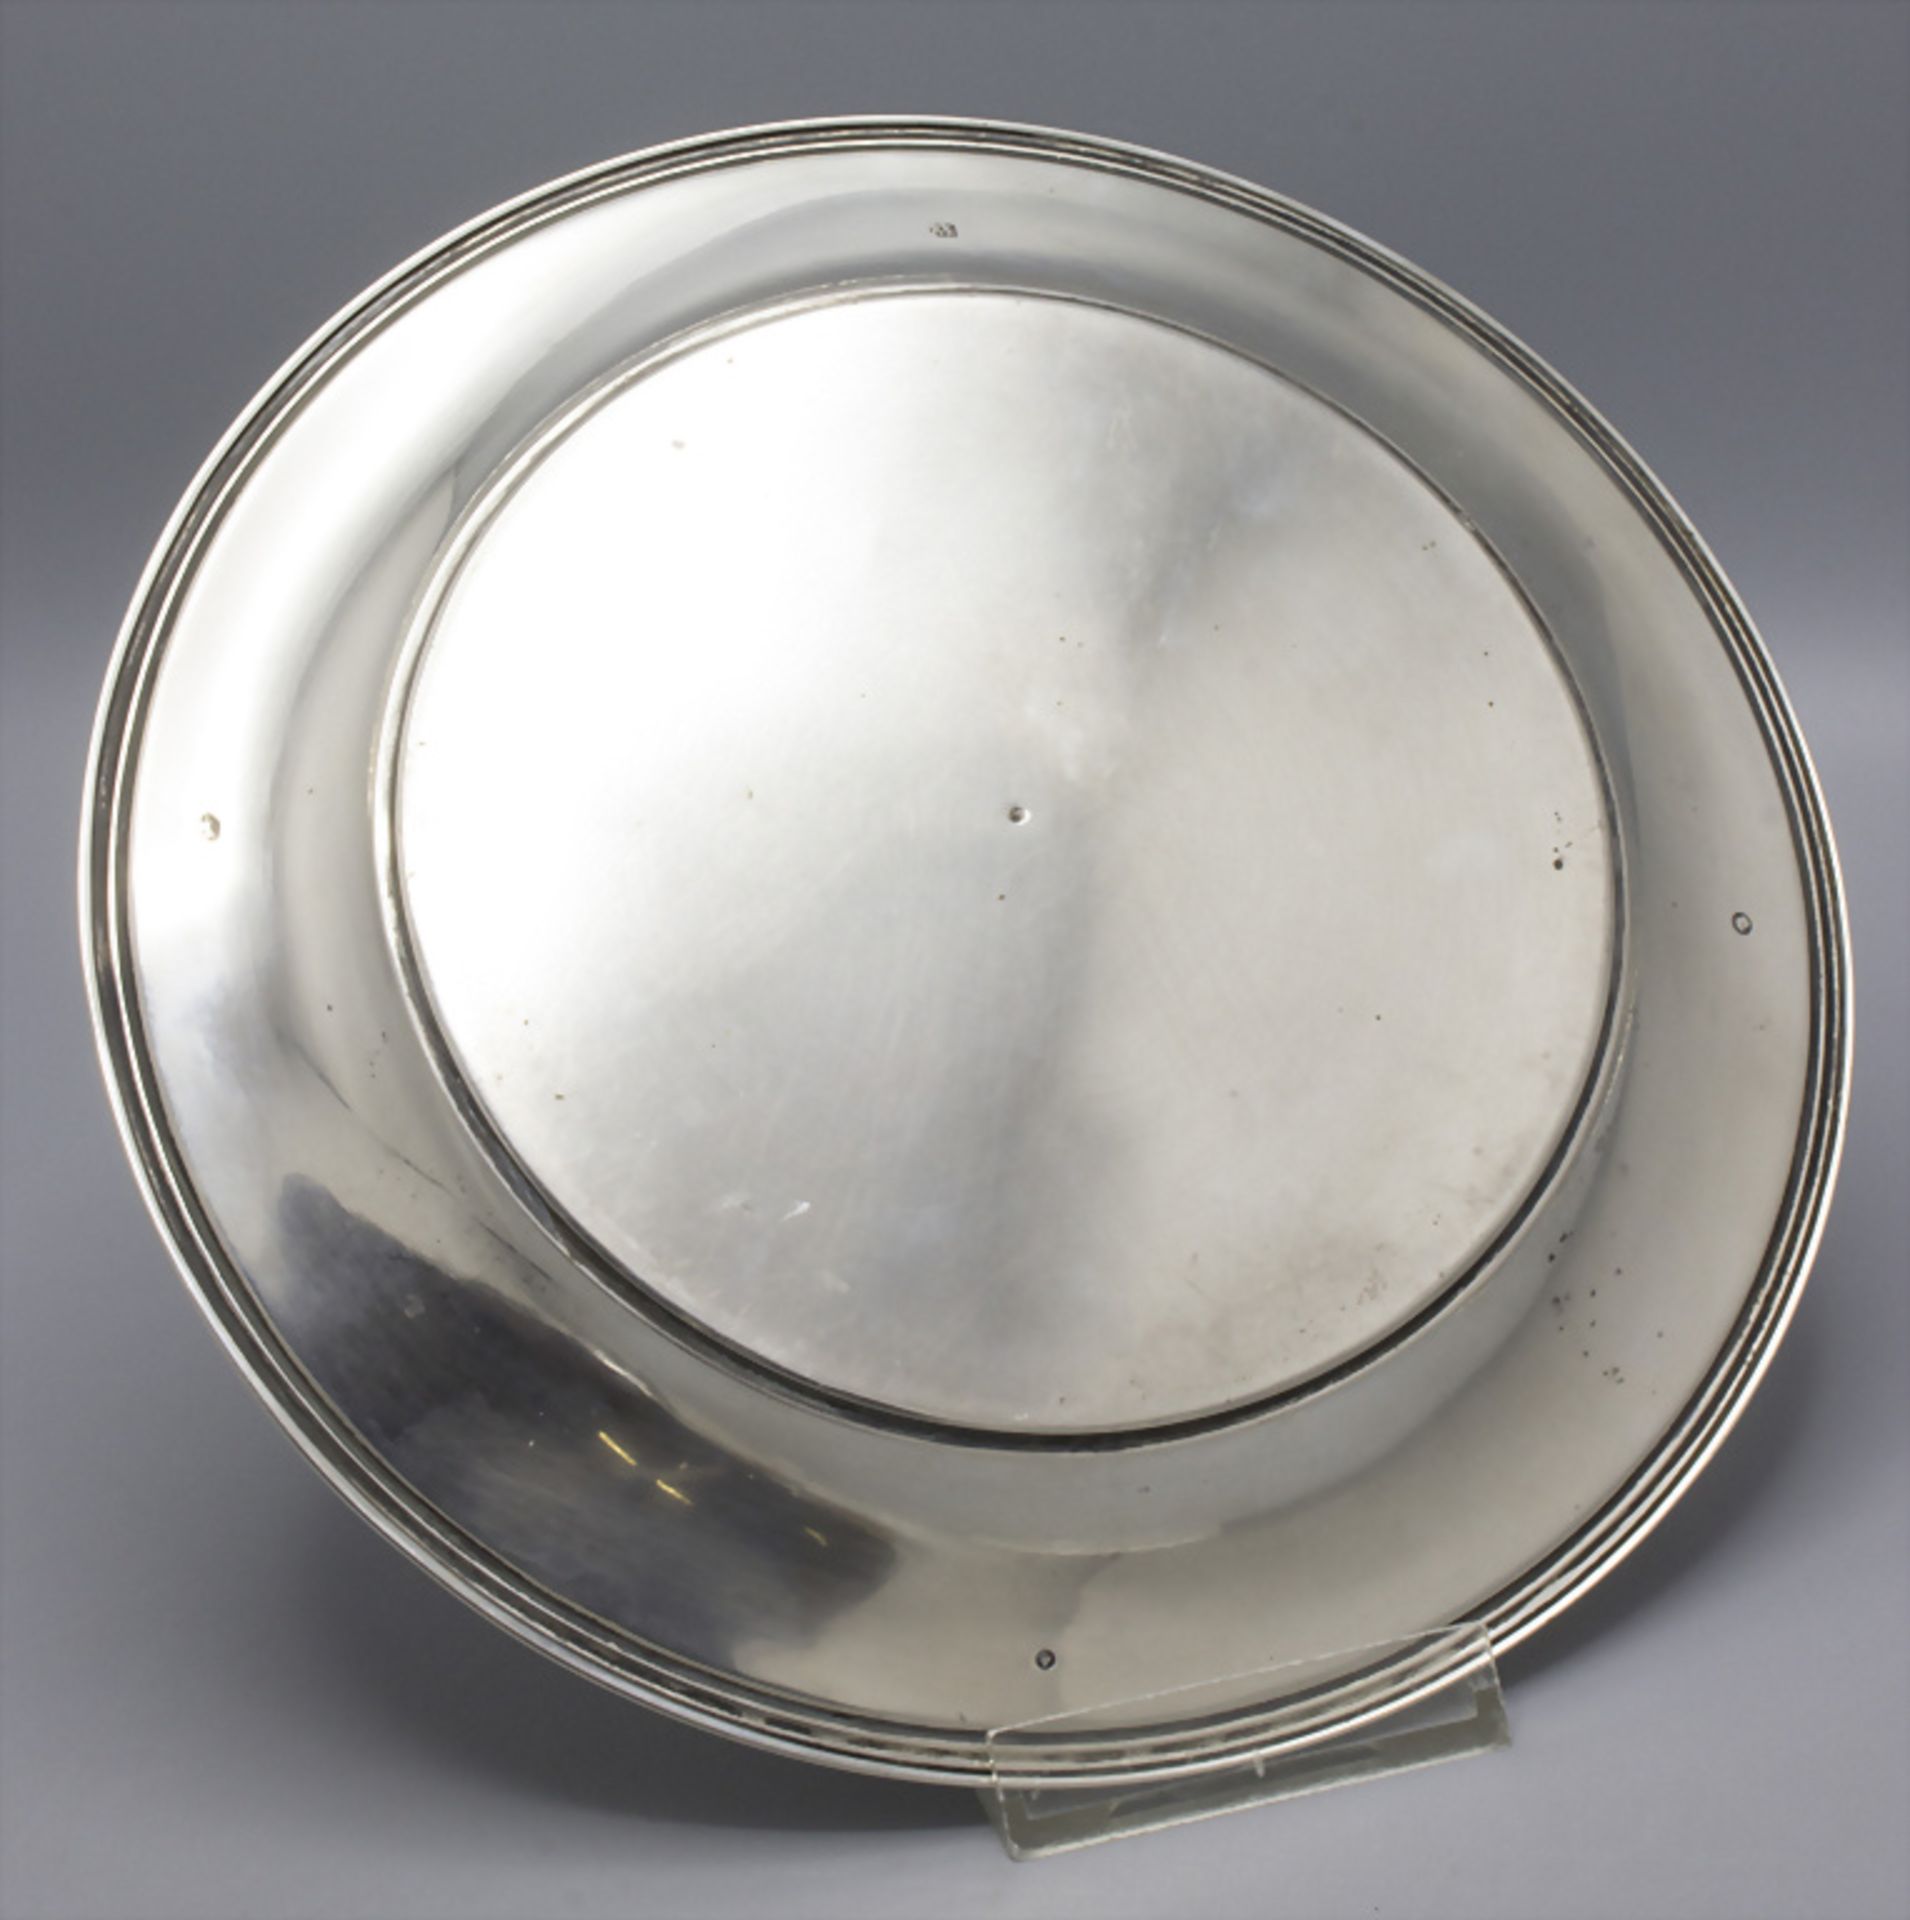 Silberteller / A silver plate, van Kempen, The Hague, 1869 - Bild 3 aus 7